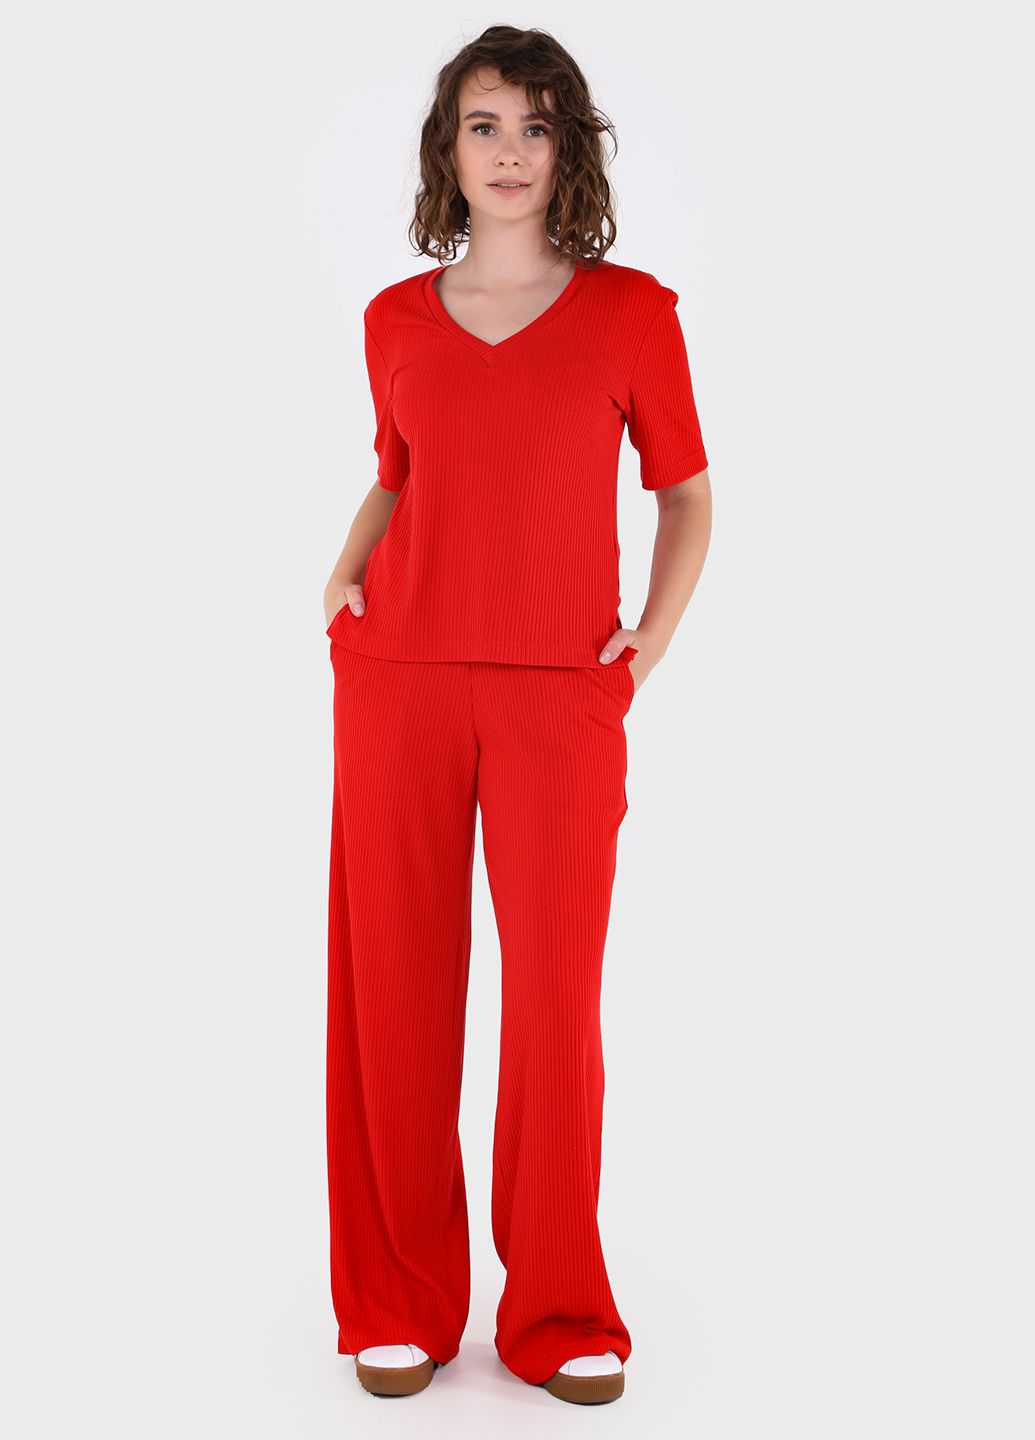 Купить Легкая футболка женская в рубчик Merlini Корунья 800000025 - Красный, 42-44 в интернет-магазине